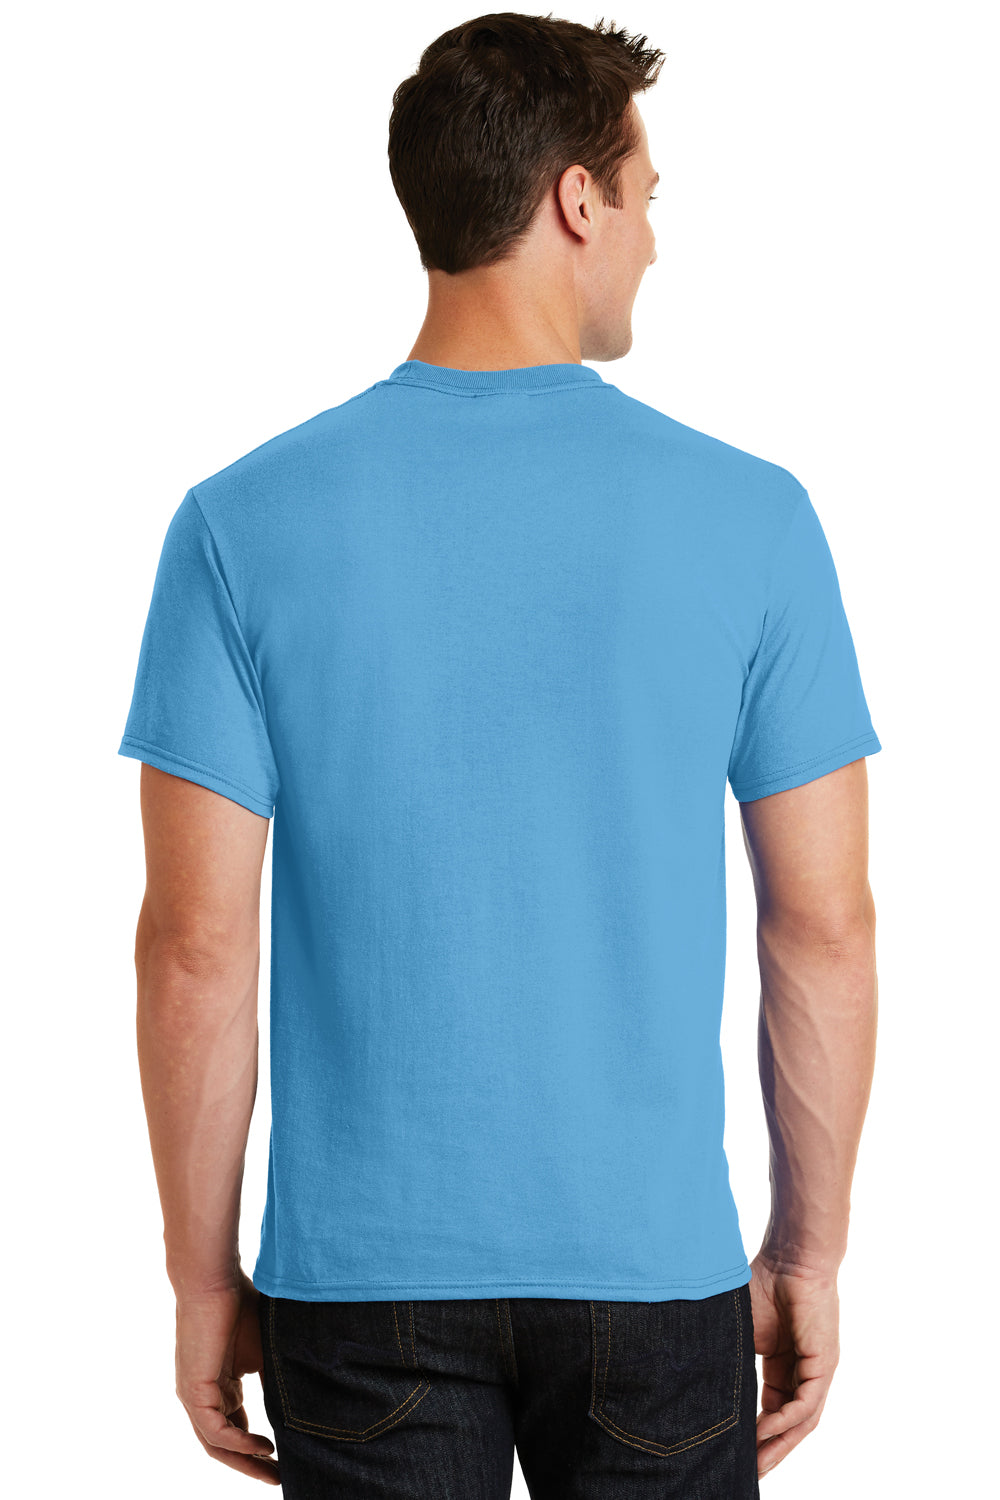 Port & Company PC55 Mens Core Short Sleeve Crewneck T-Shirt Aqua Blue Back